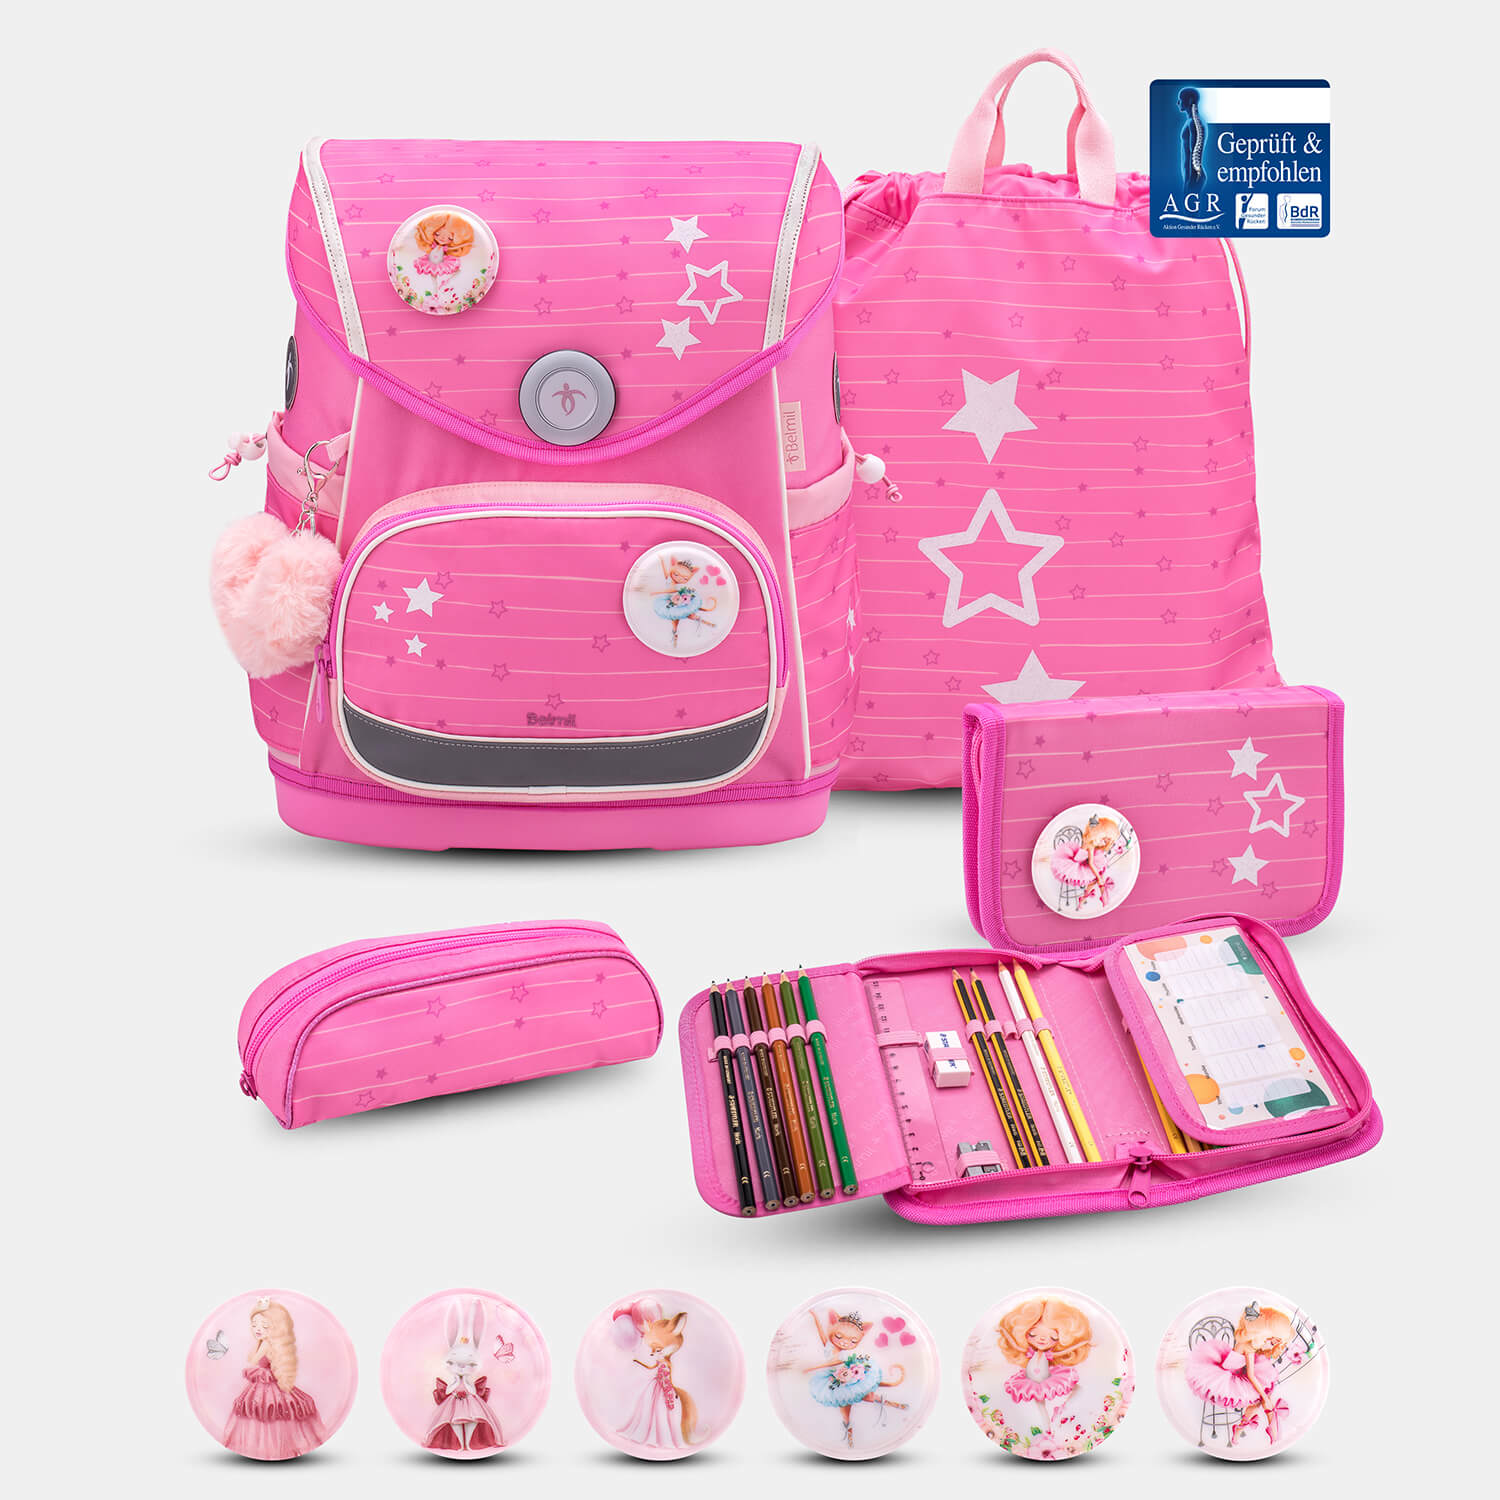 Compact Plus Candy Schoolbag set 5pcs.